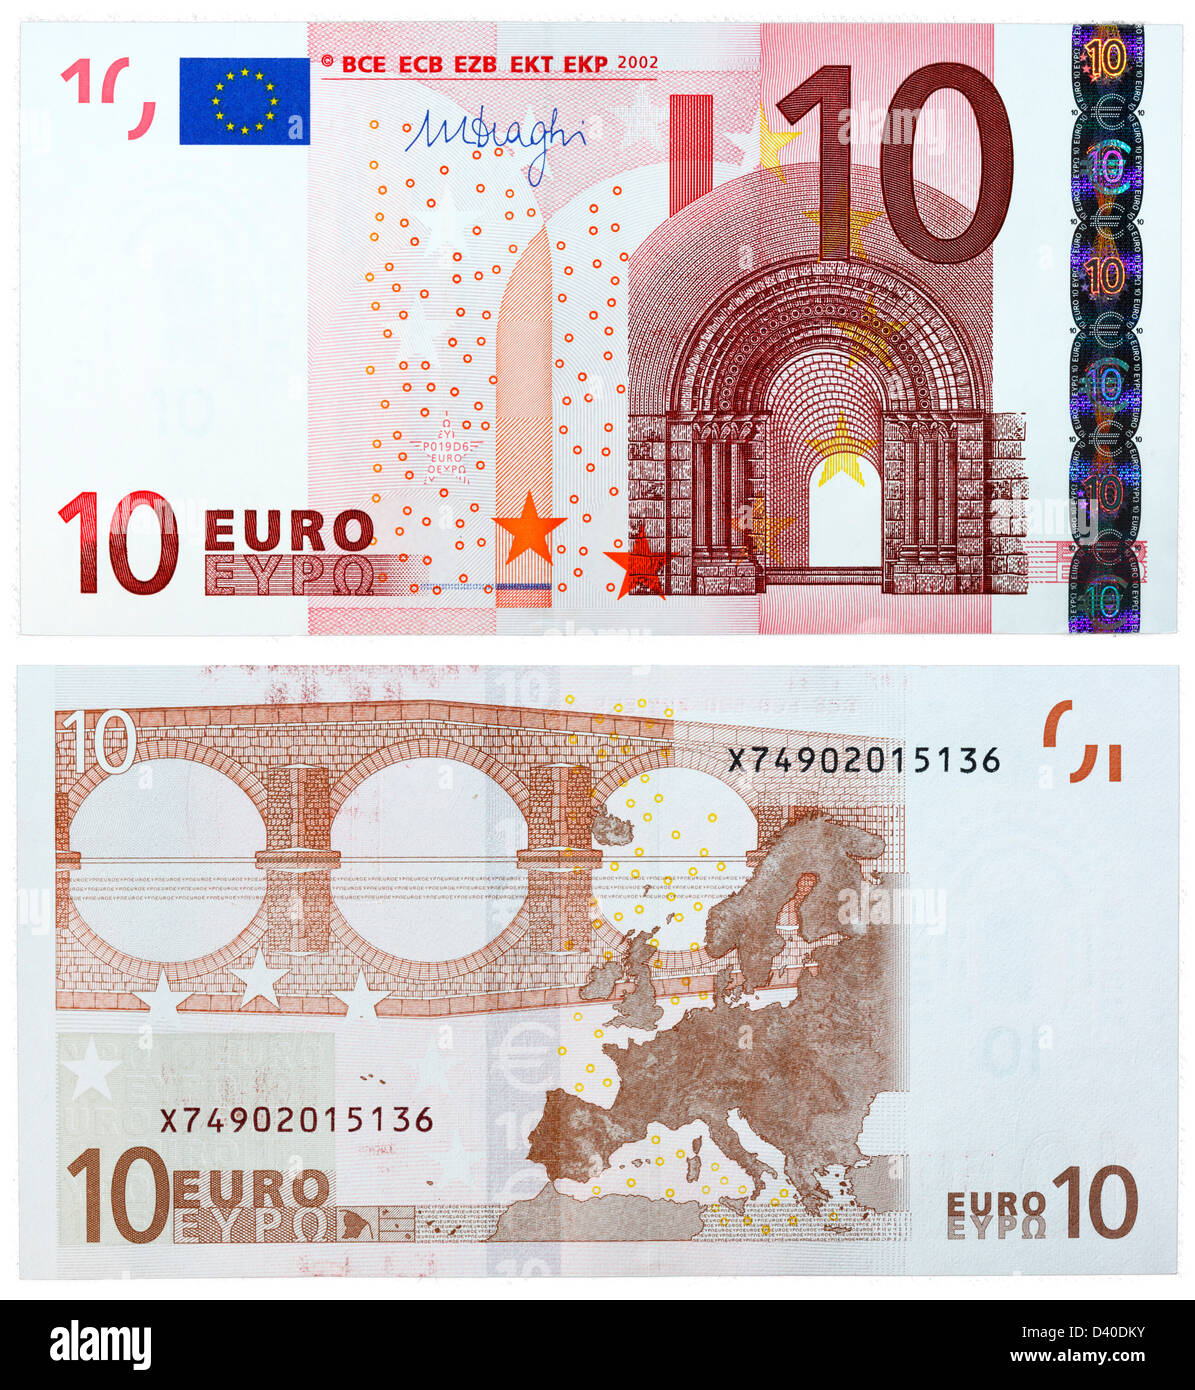 10 Euro banknote, Romanesque architecture and bridge, 2002 Stock Photo